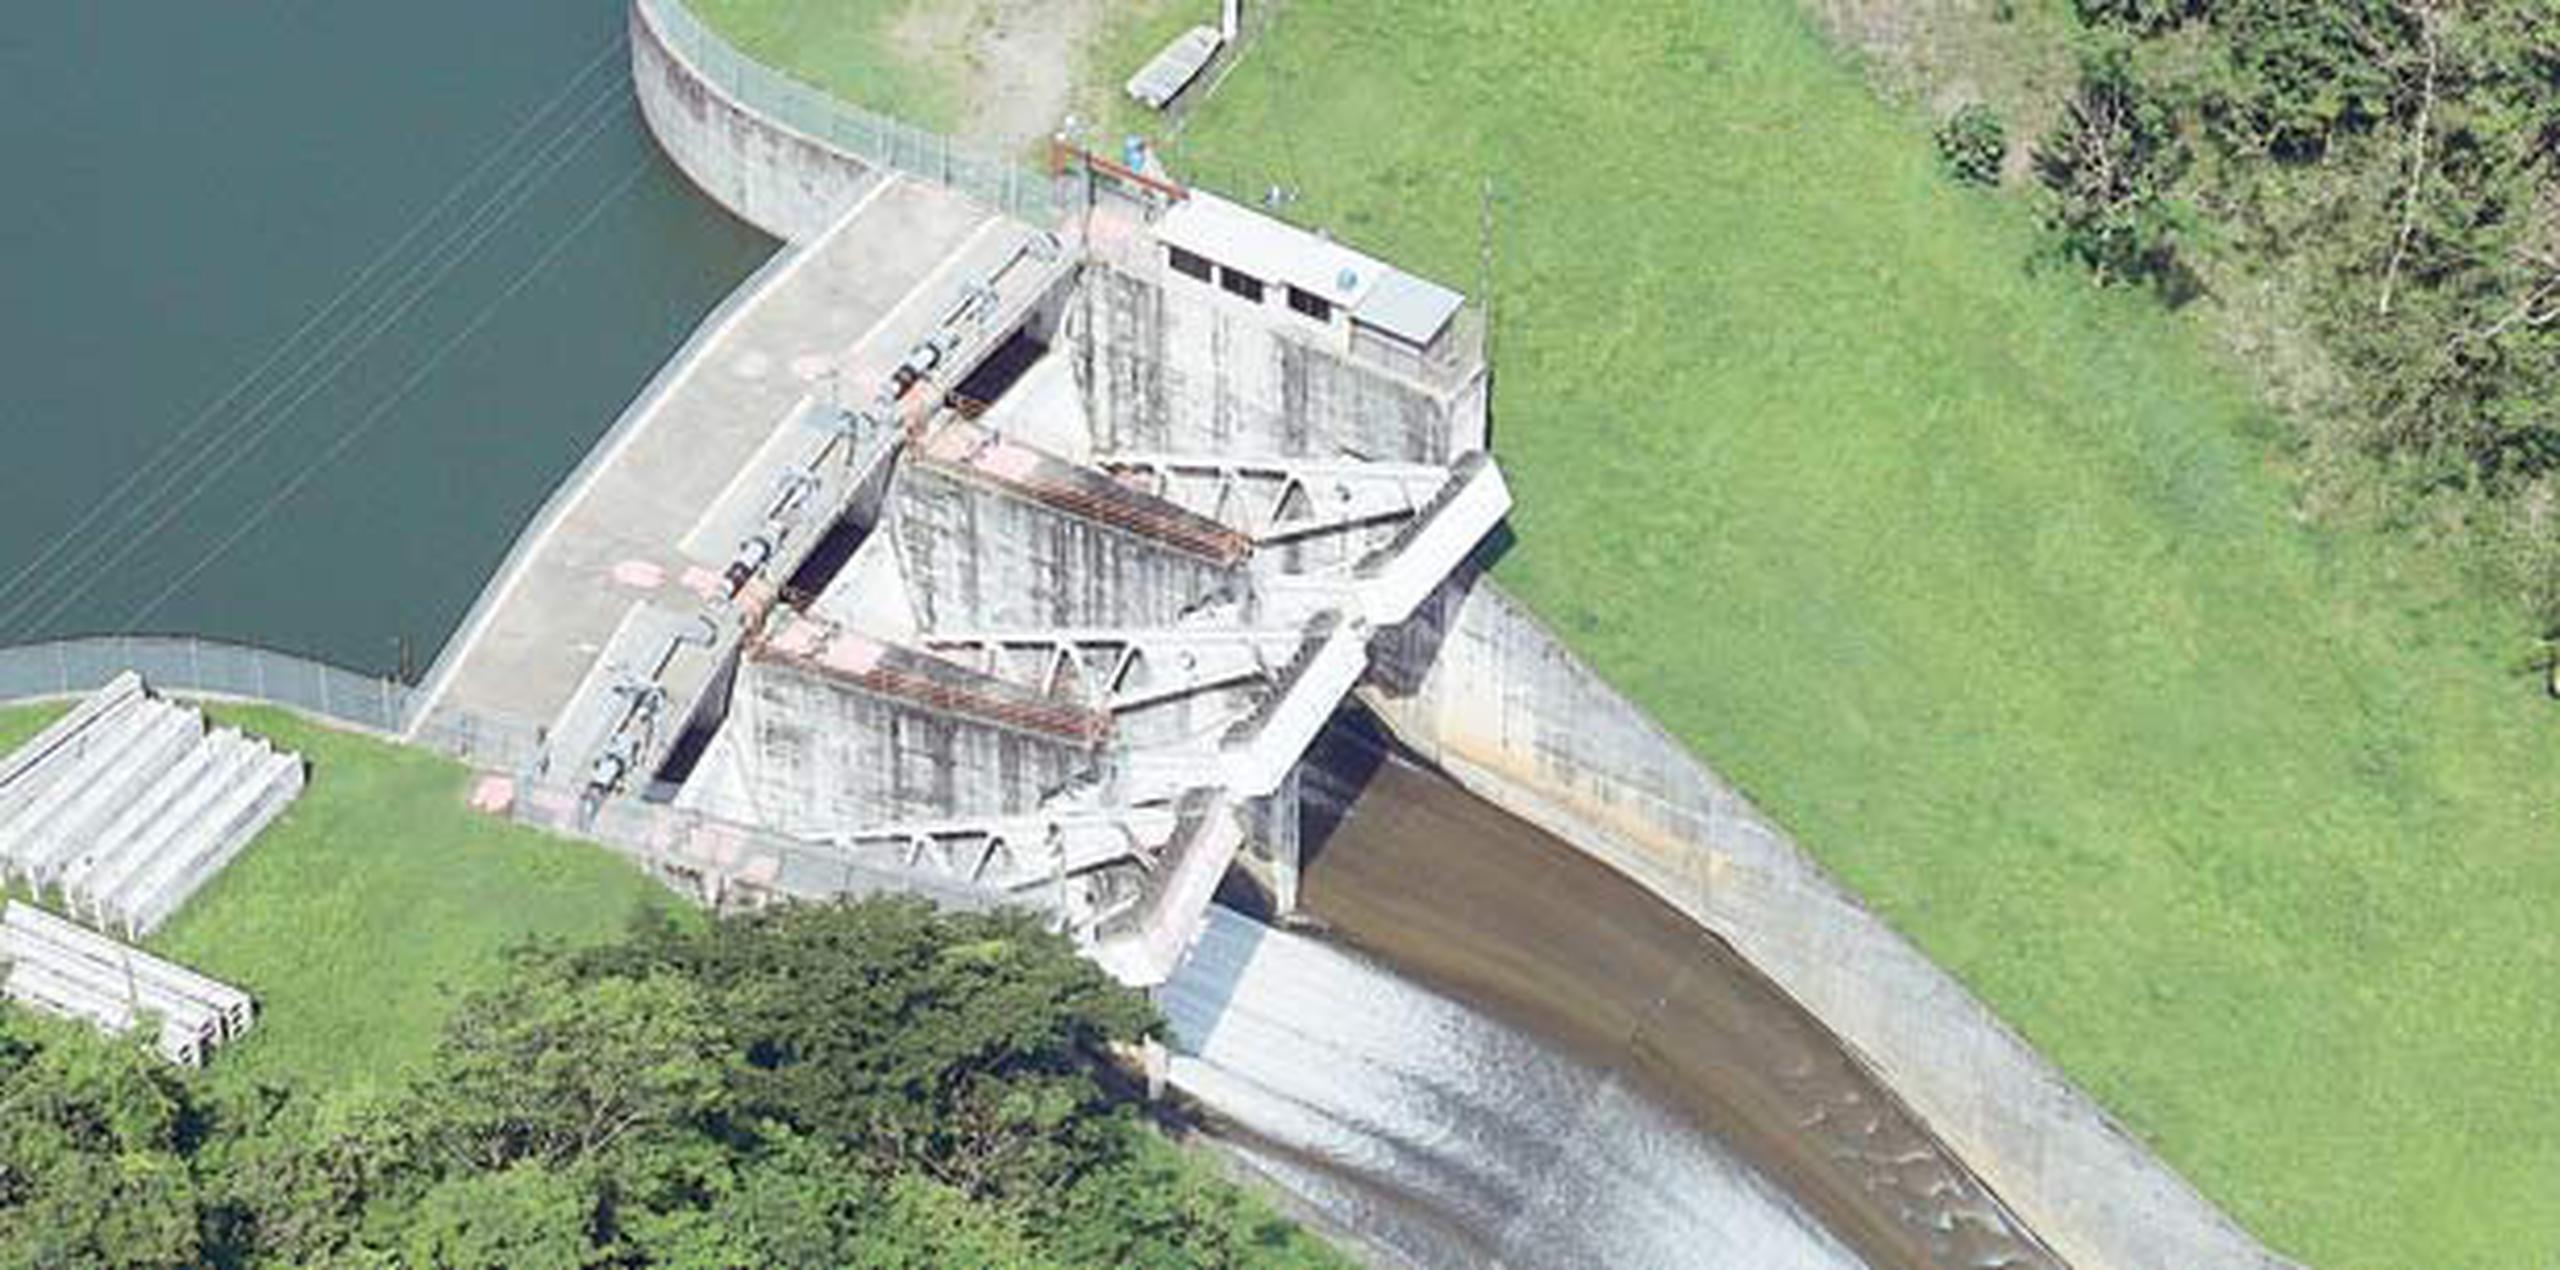 En enero pasado, la AEE inició un proceso de descargas para llevar agua desde la represa de Patillas, a través de canales de riego, hacia el río Nigua, que es una fuente de recarga del acuífero de Salinas. (Archivo)